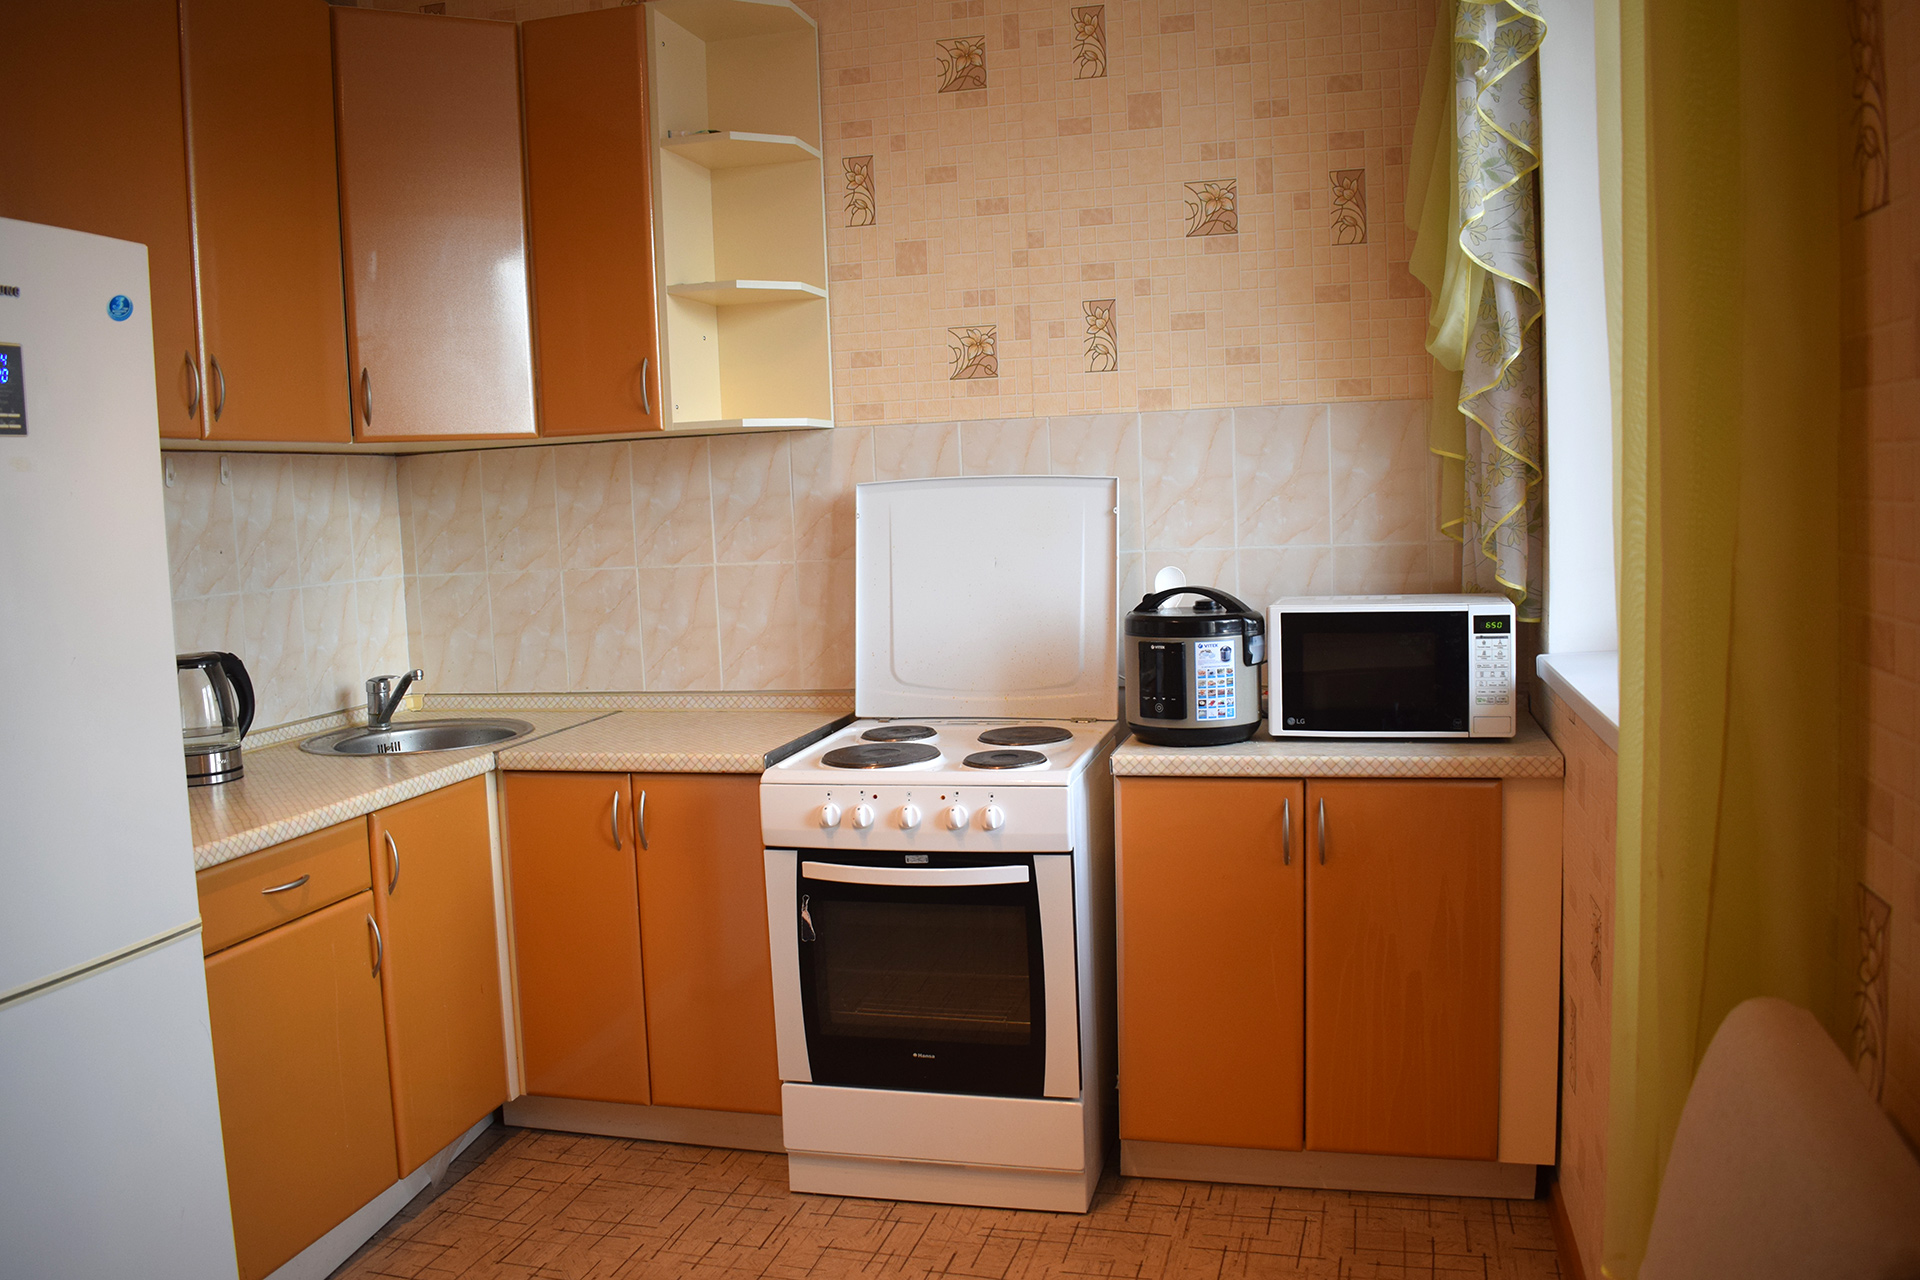 Купить 1 комн квартиру ул Енисейская Москва. Купить 1 комнатную квартиру в мытищах недорого